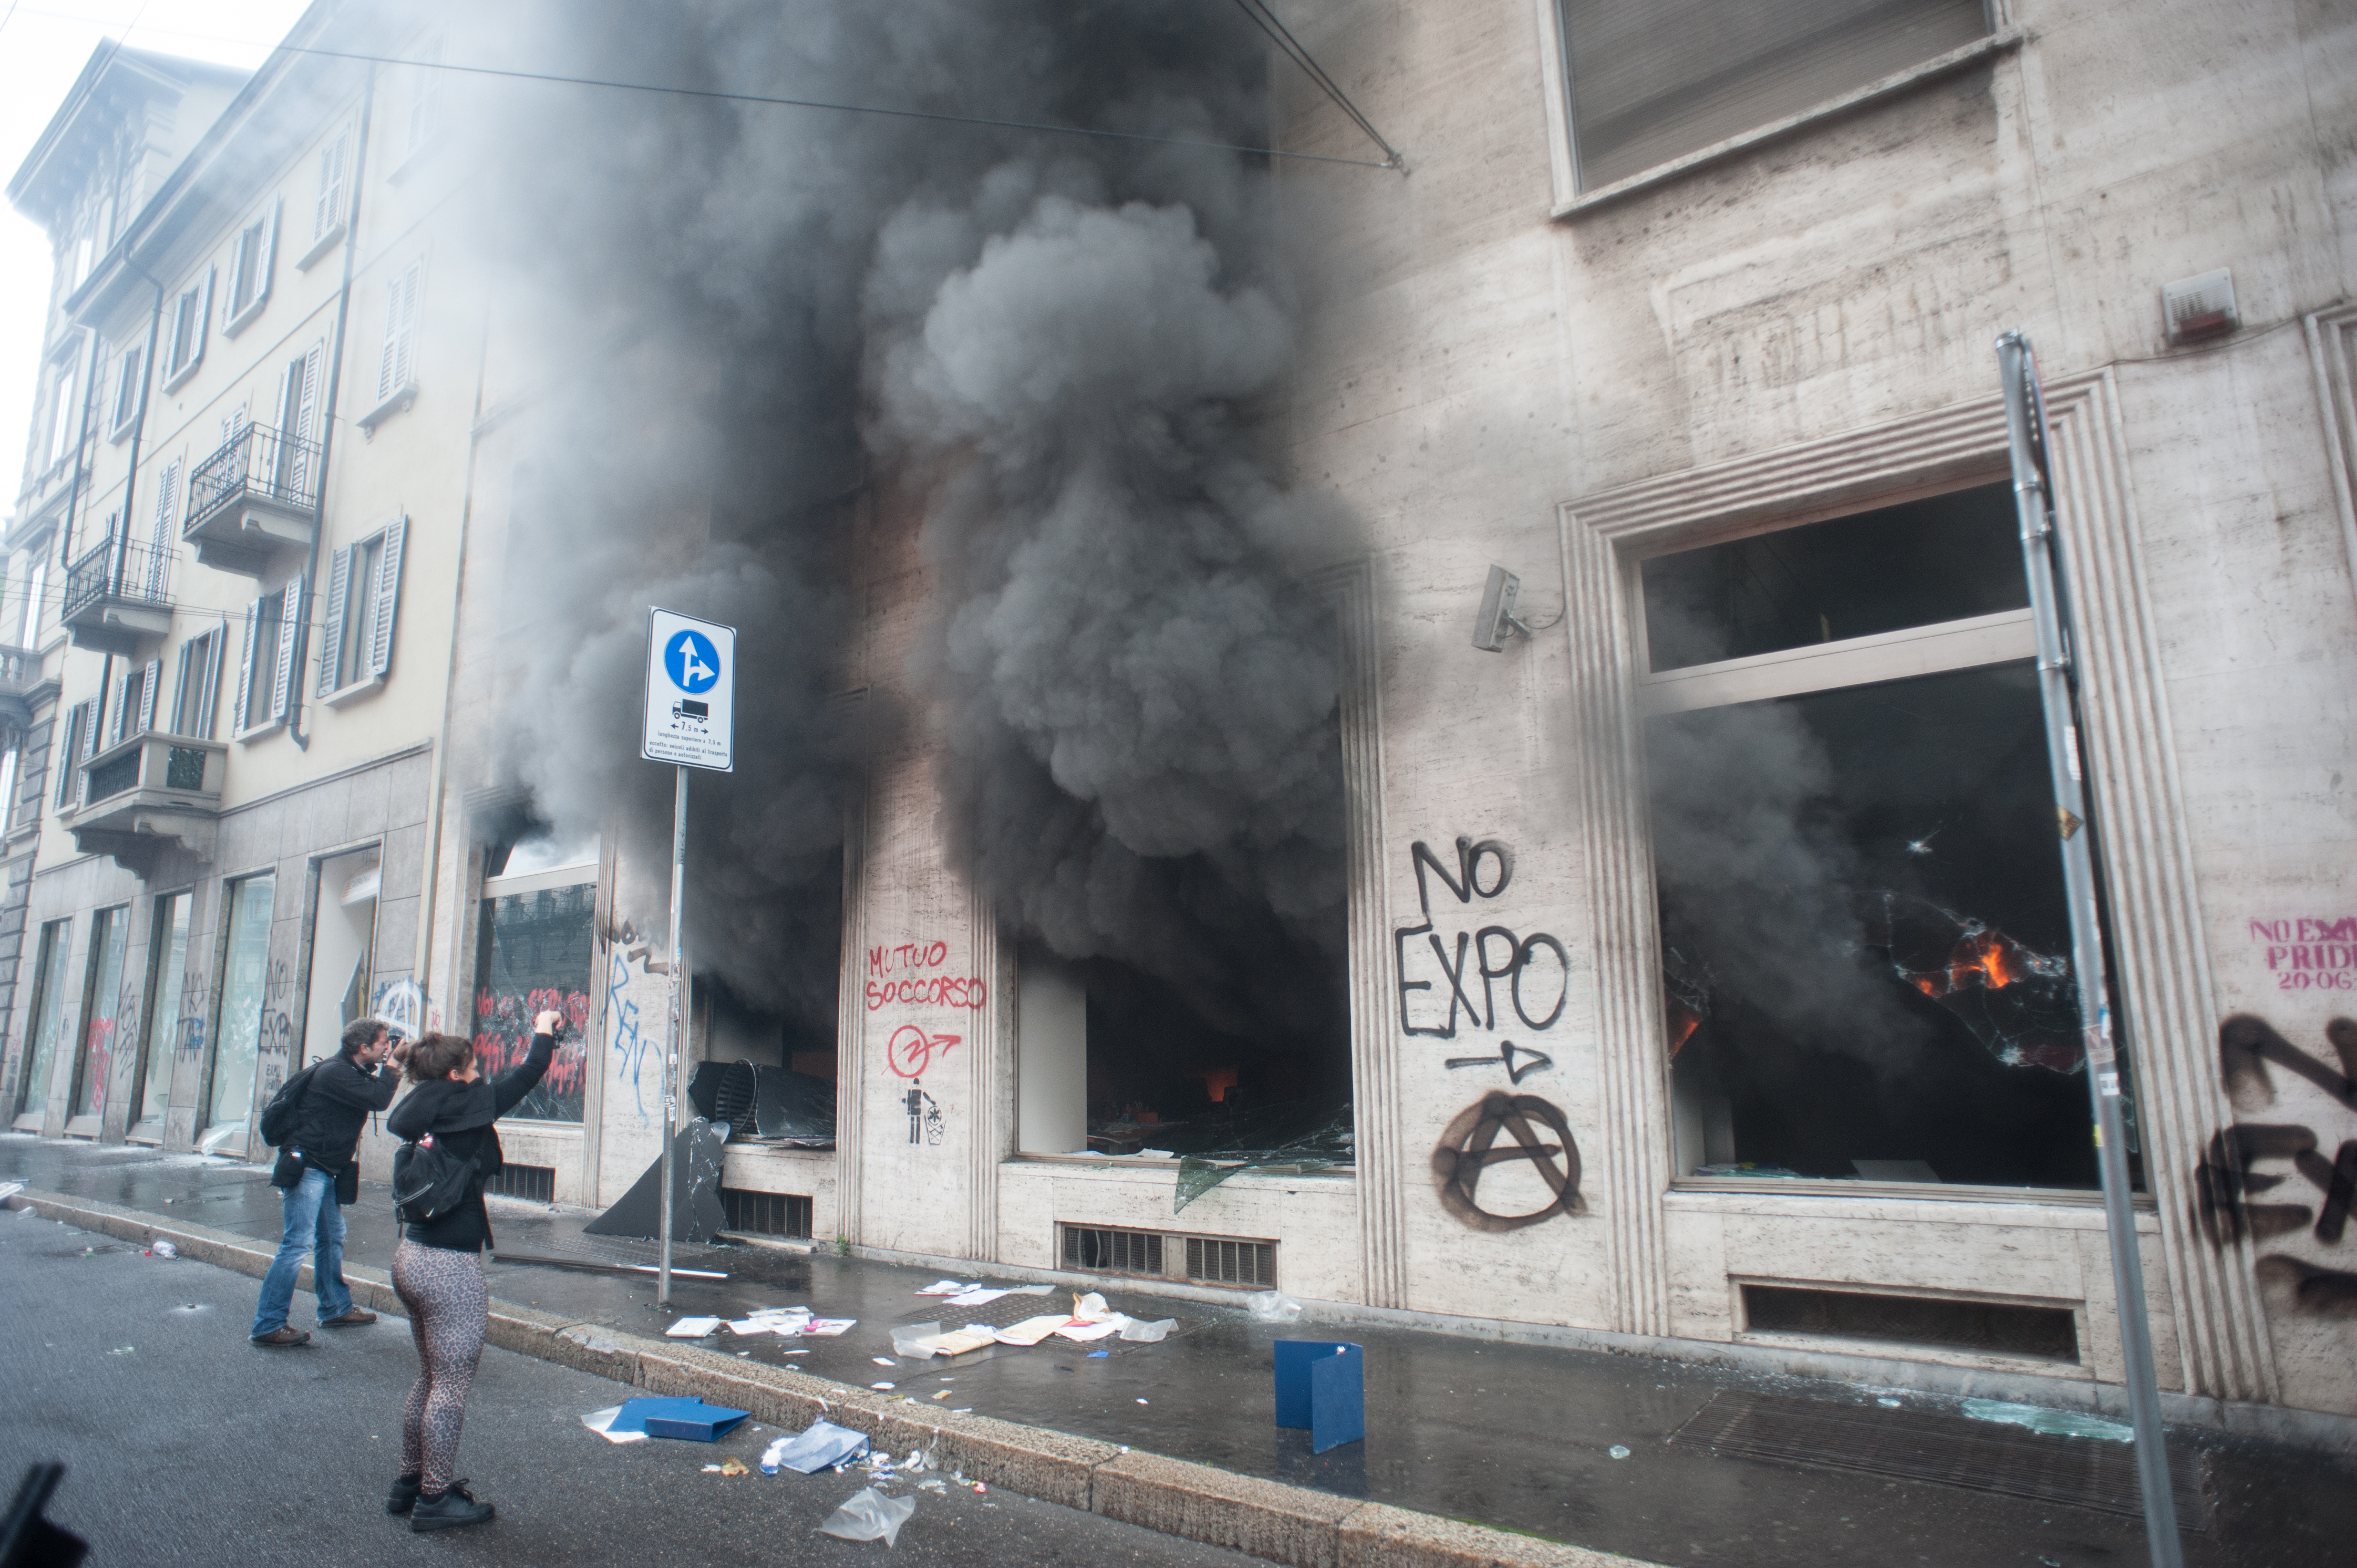 Affrontements à Milan, 1er mai 20&5. Photo Marco Aprile. Copyright Demotix.